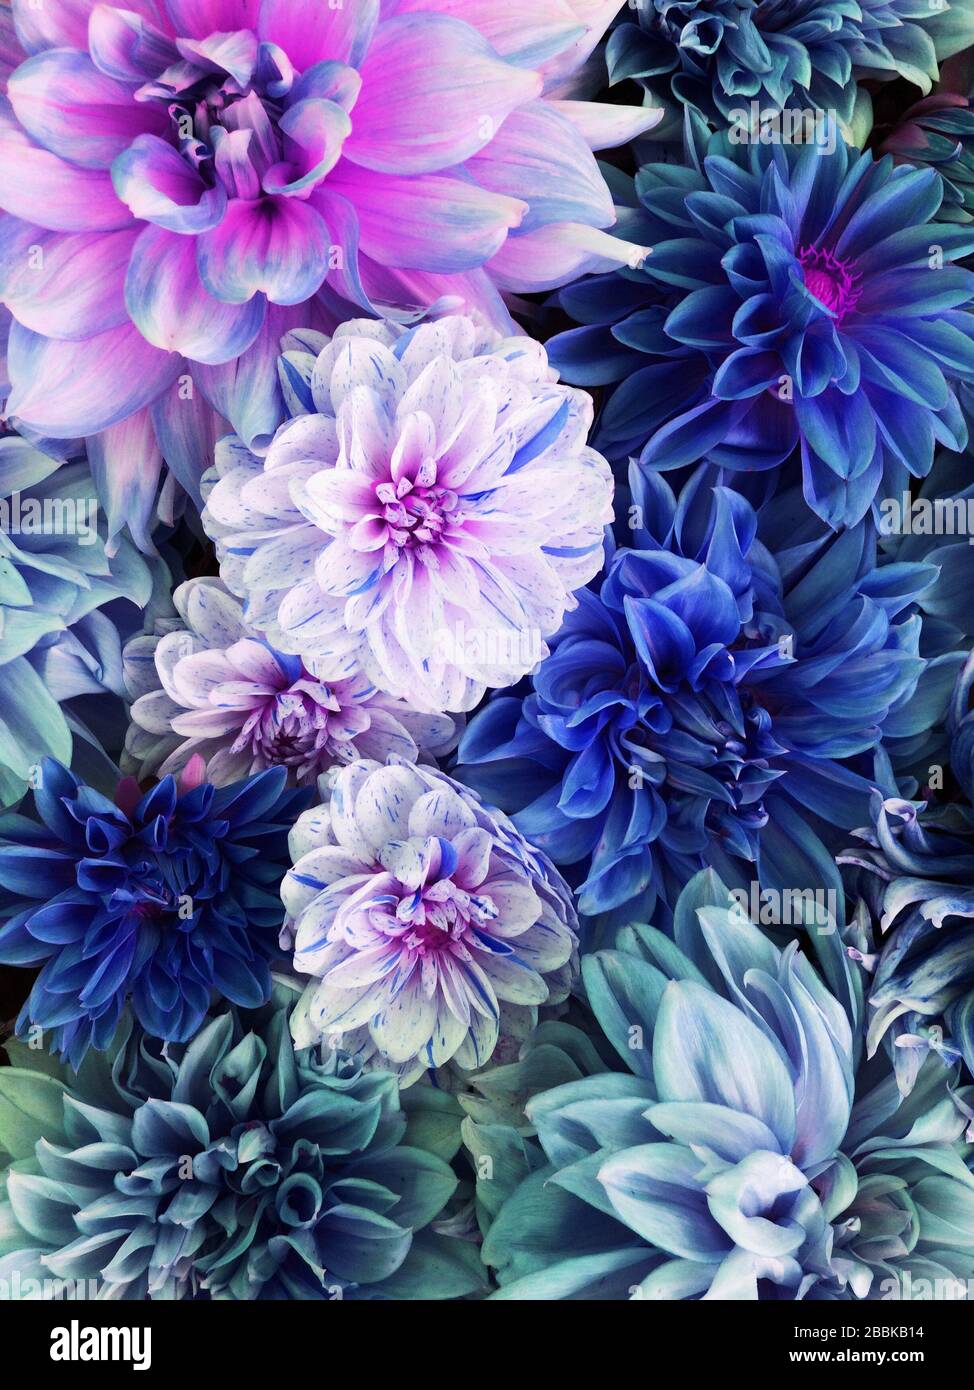 Bunte blaue, weiße und violette Dahlienblüten in voller Blüte. Stockfoto